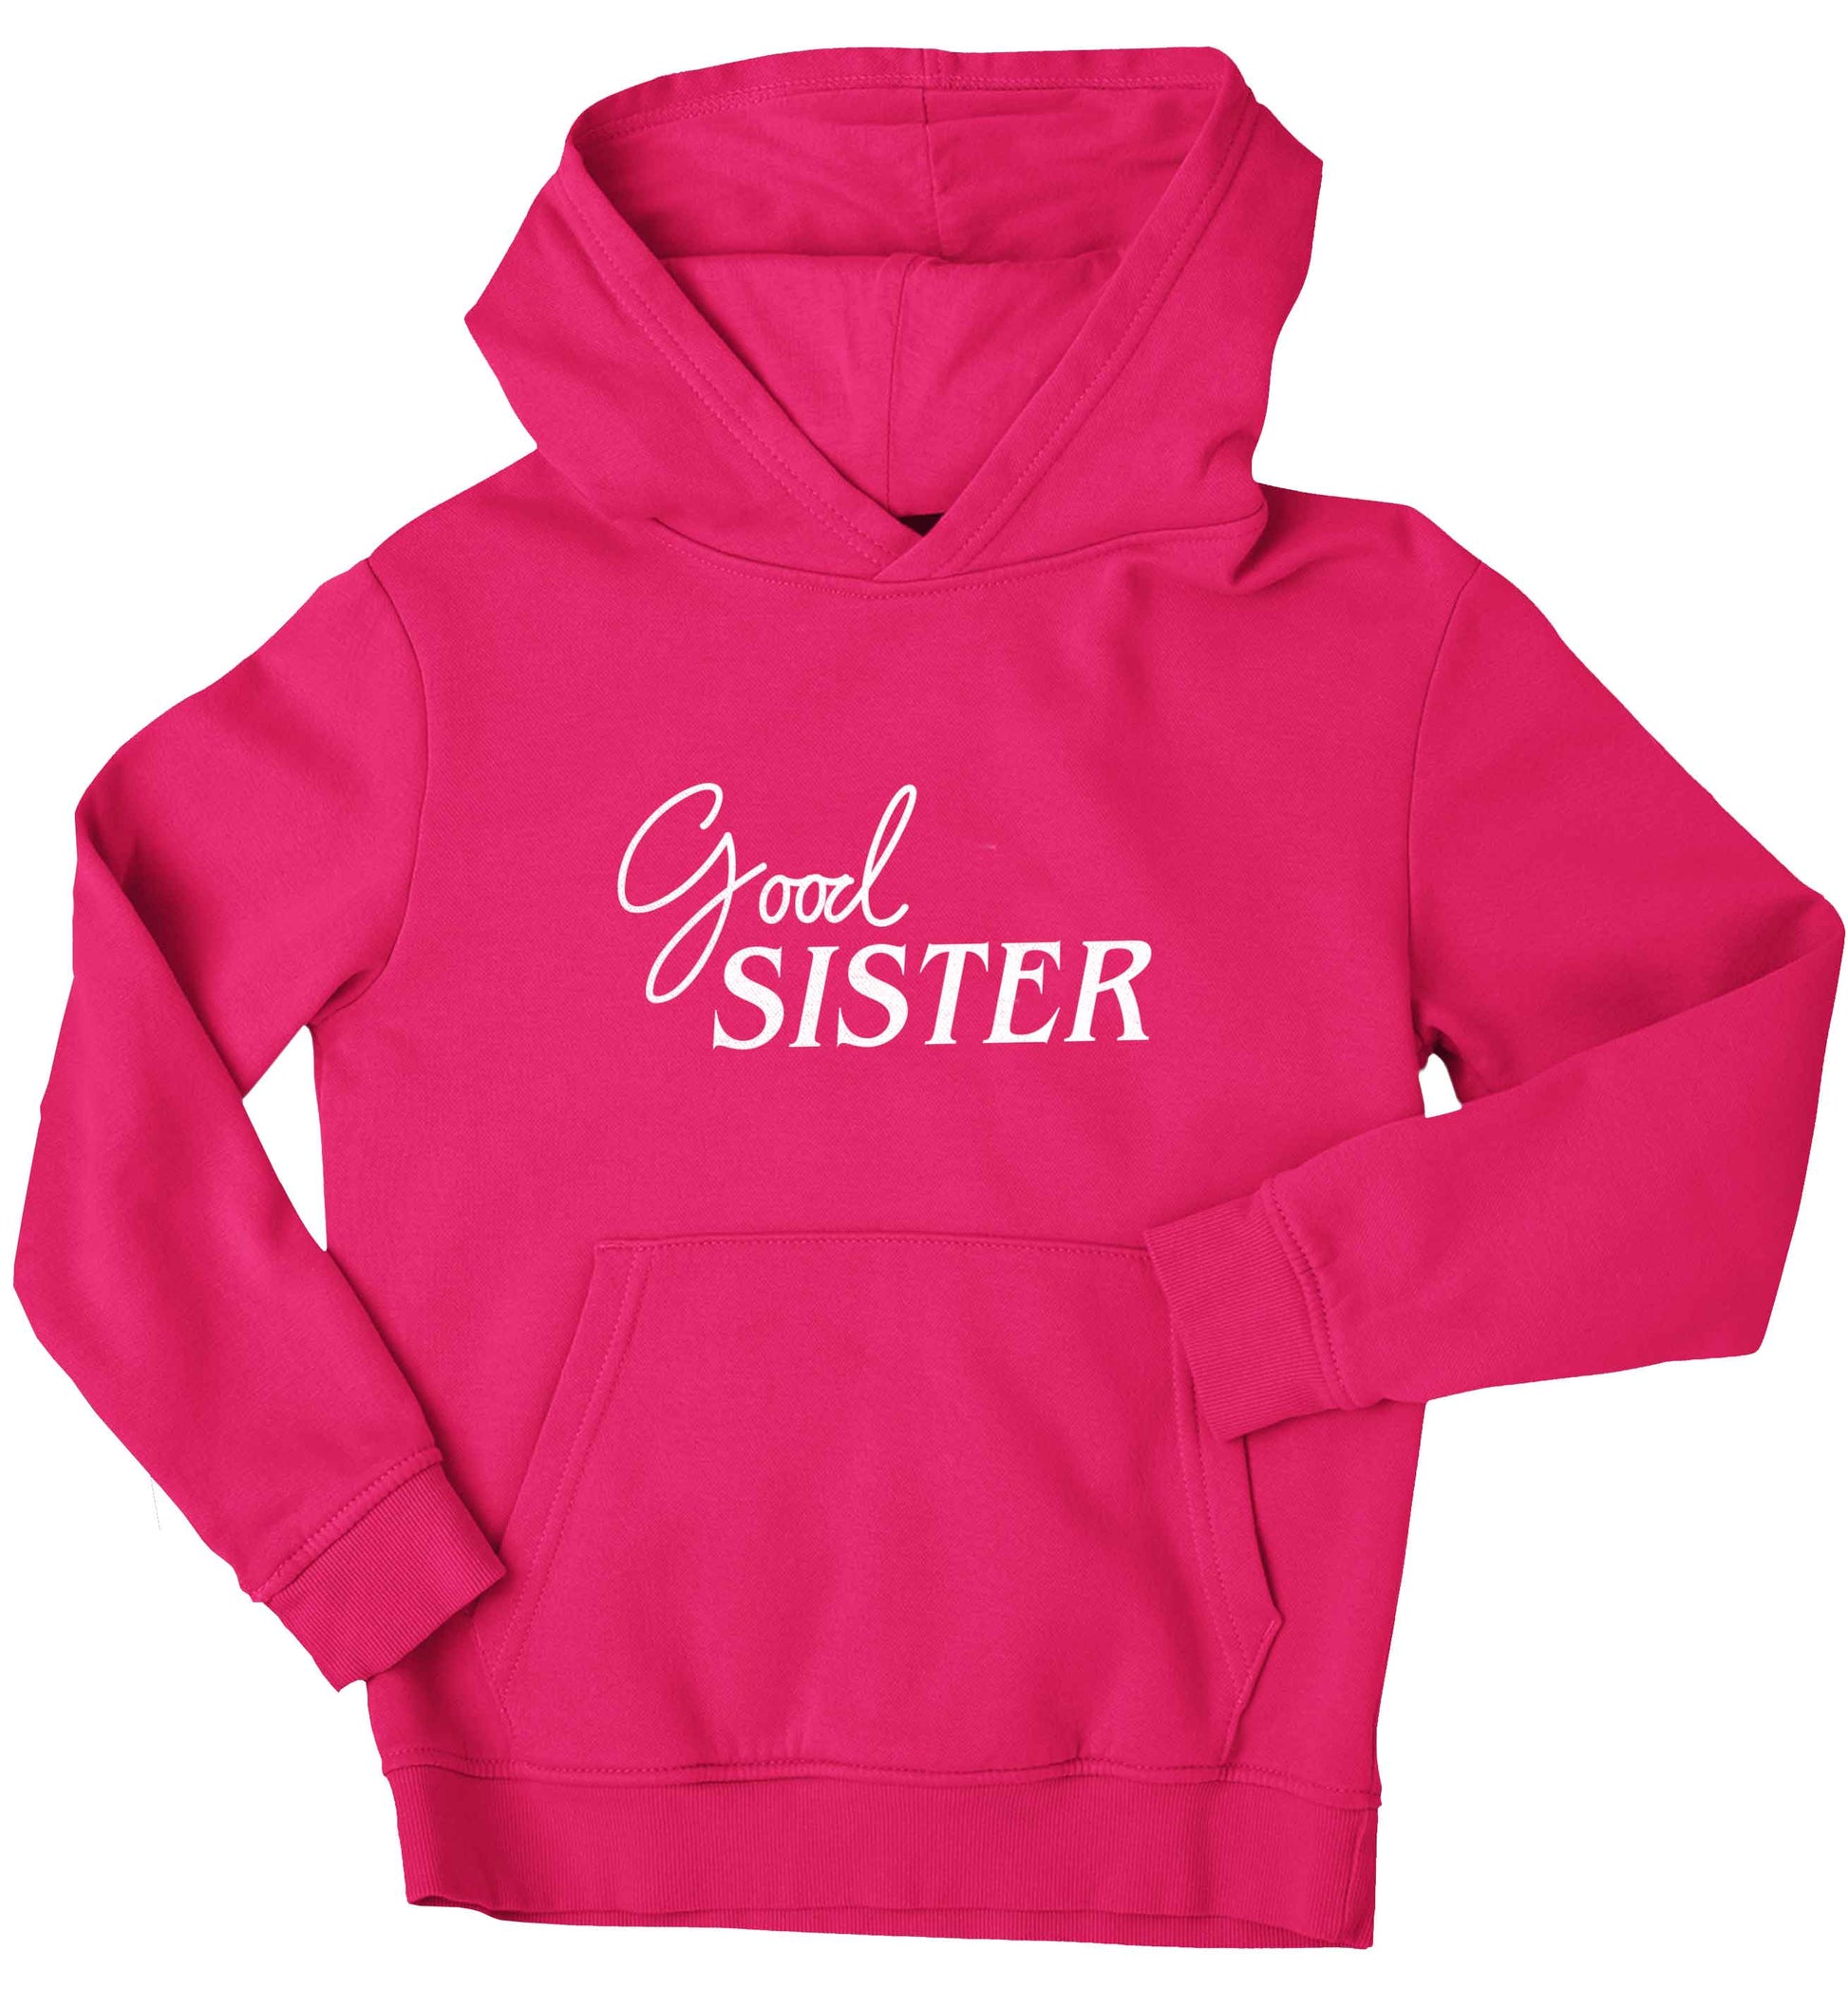 Good sister children's pink hoodie 12-13 Years